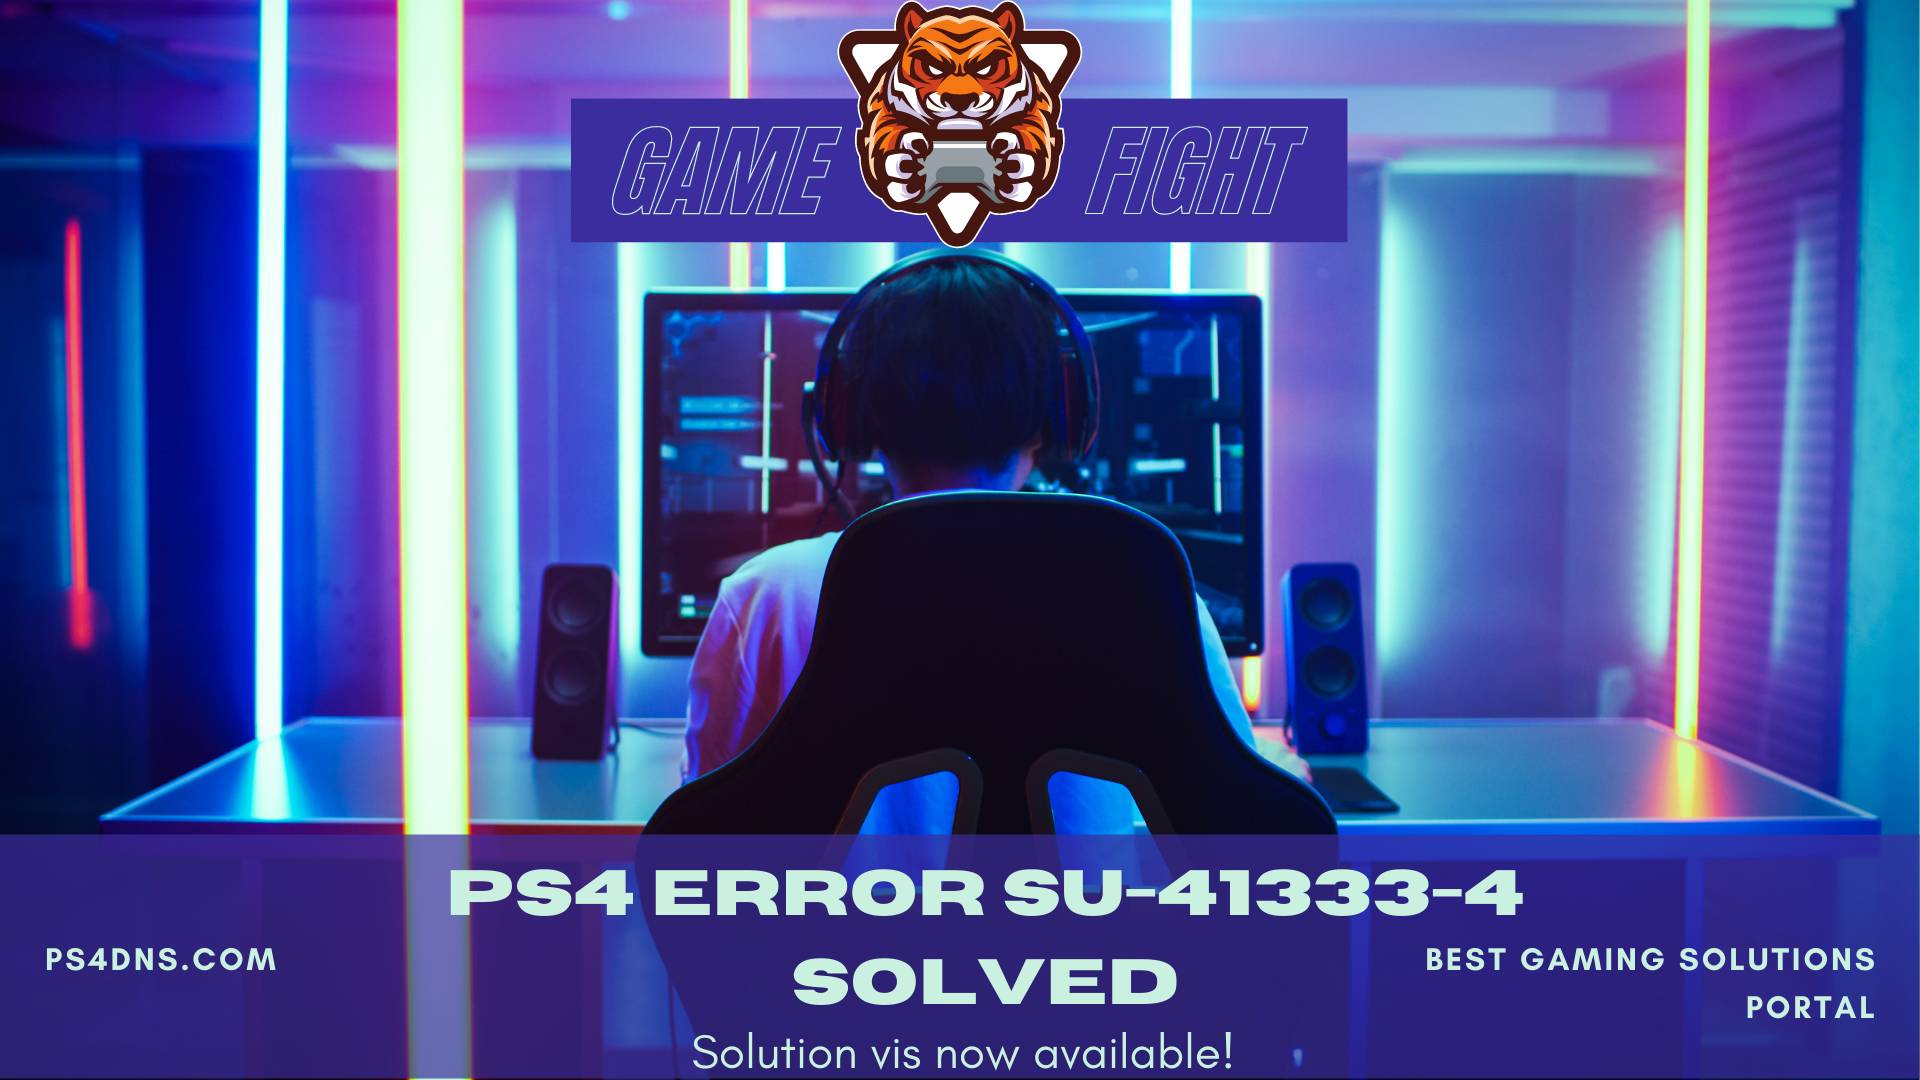 What is SU-41333-4 PS4 Error Code?